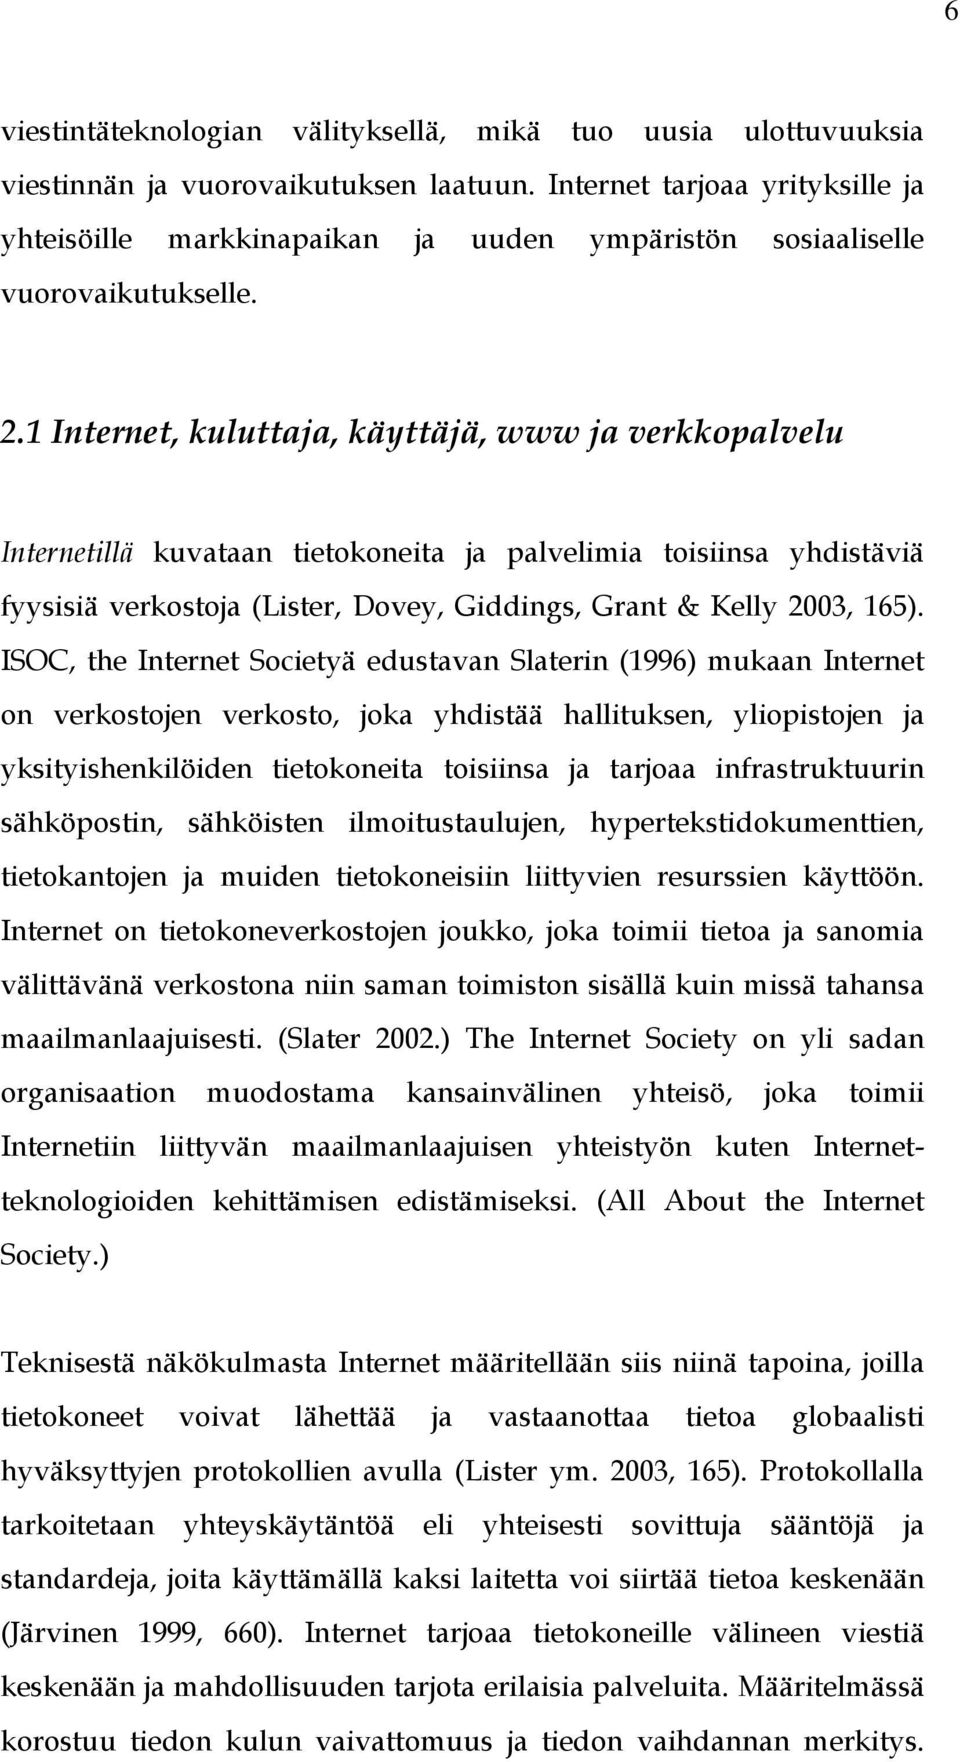 1 Internet, kuluttaja, käyttäjä, www ja verkkopalvelu Internetillä kuvataan tietokoneita ja palvelimia toisiinsa yhdistäviä fyysisiä verkostoja (Lister, Dovey, Giddings, Grant & Kelly 2003, 165).